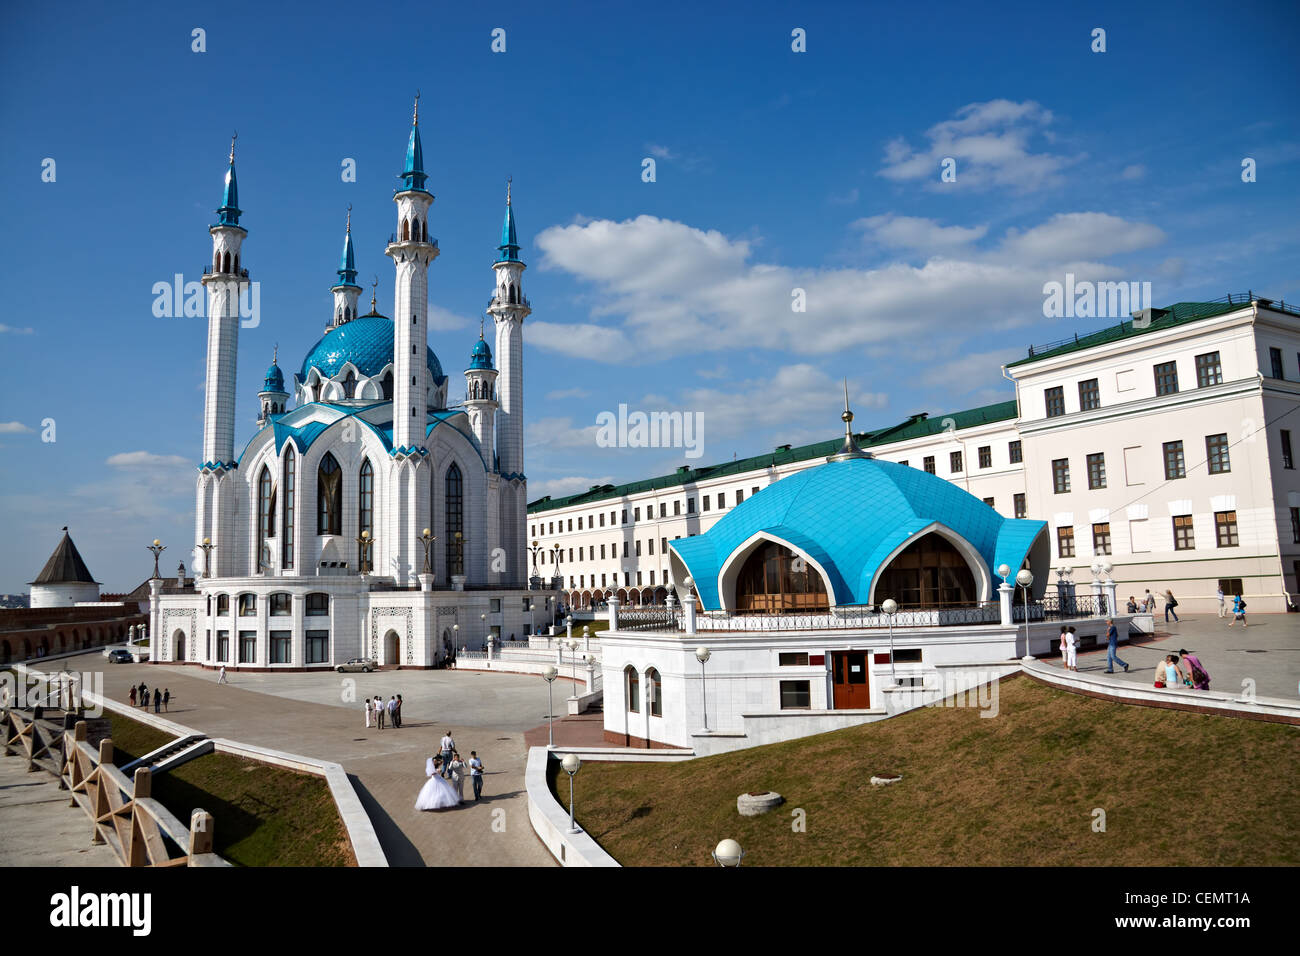 KAZAN, RUSSIE - août 01, 2009 : Kul Sharif est attraction touristique de Kazan, capitale du Tatarstan et de l'Universiade 2013 Banque D'Images